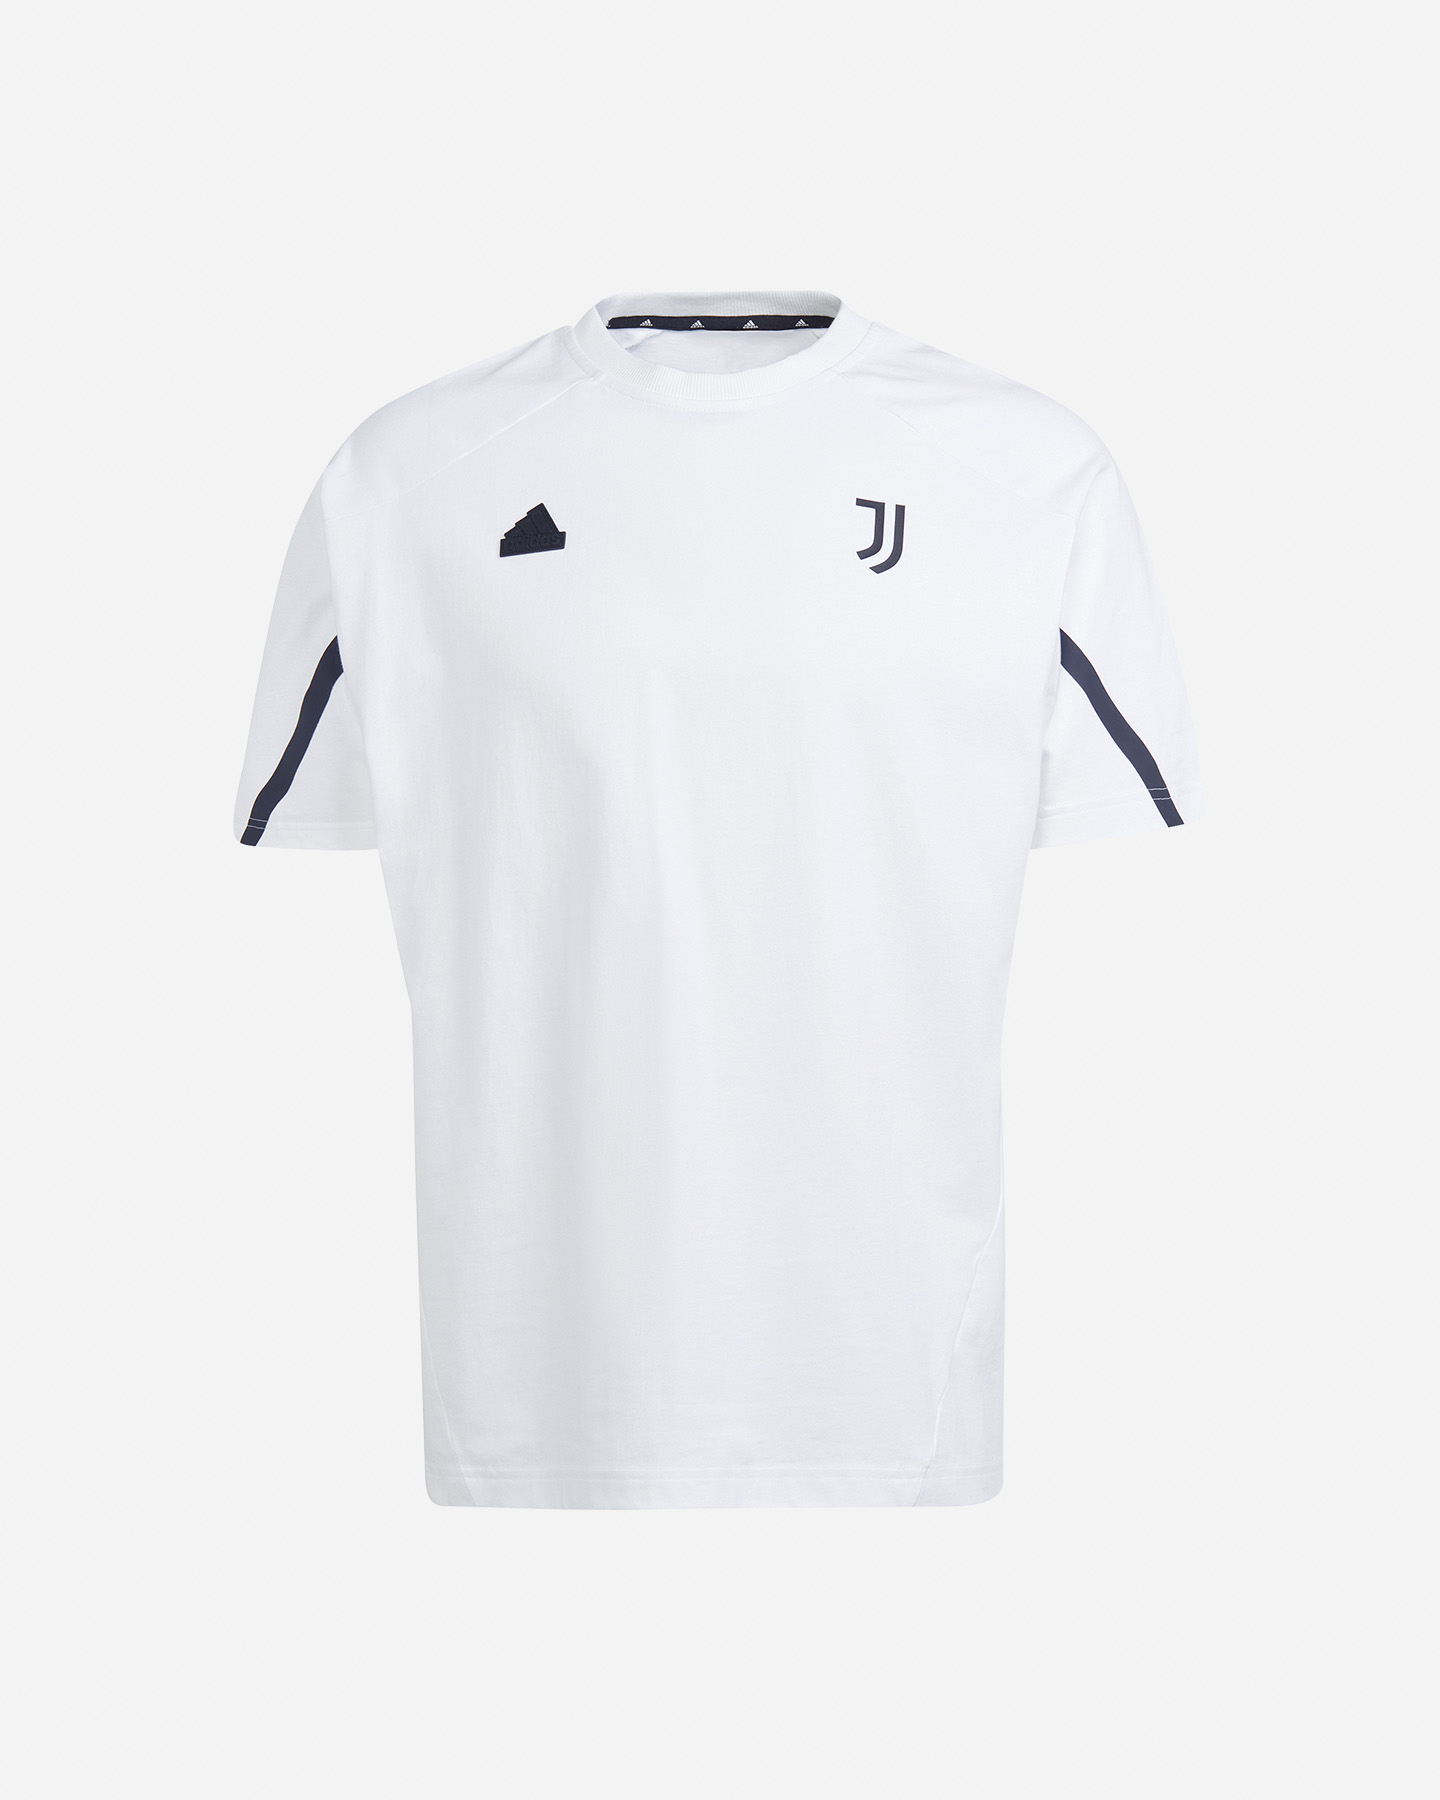 Image of Adidas Juventus D4gmd M - Abbigliamento Calcio - Uomo